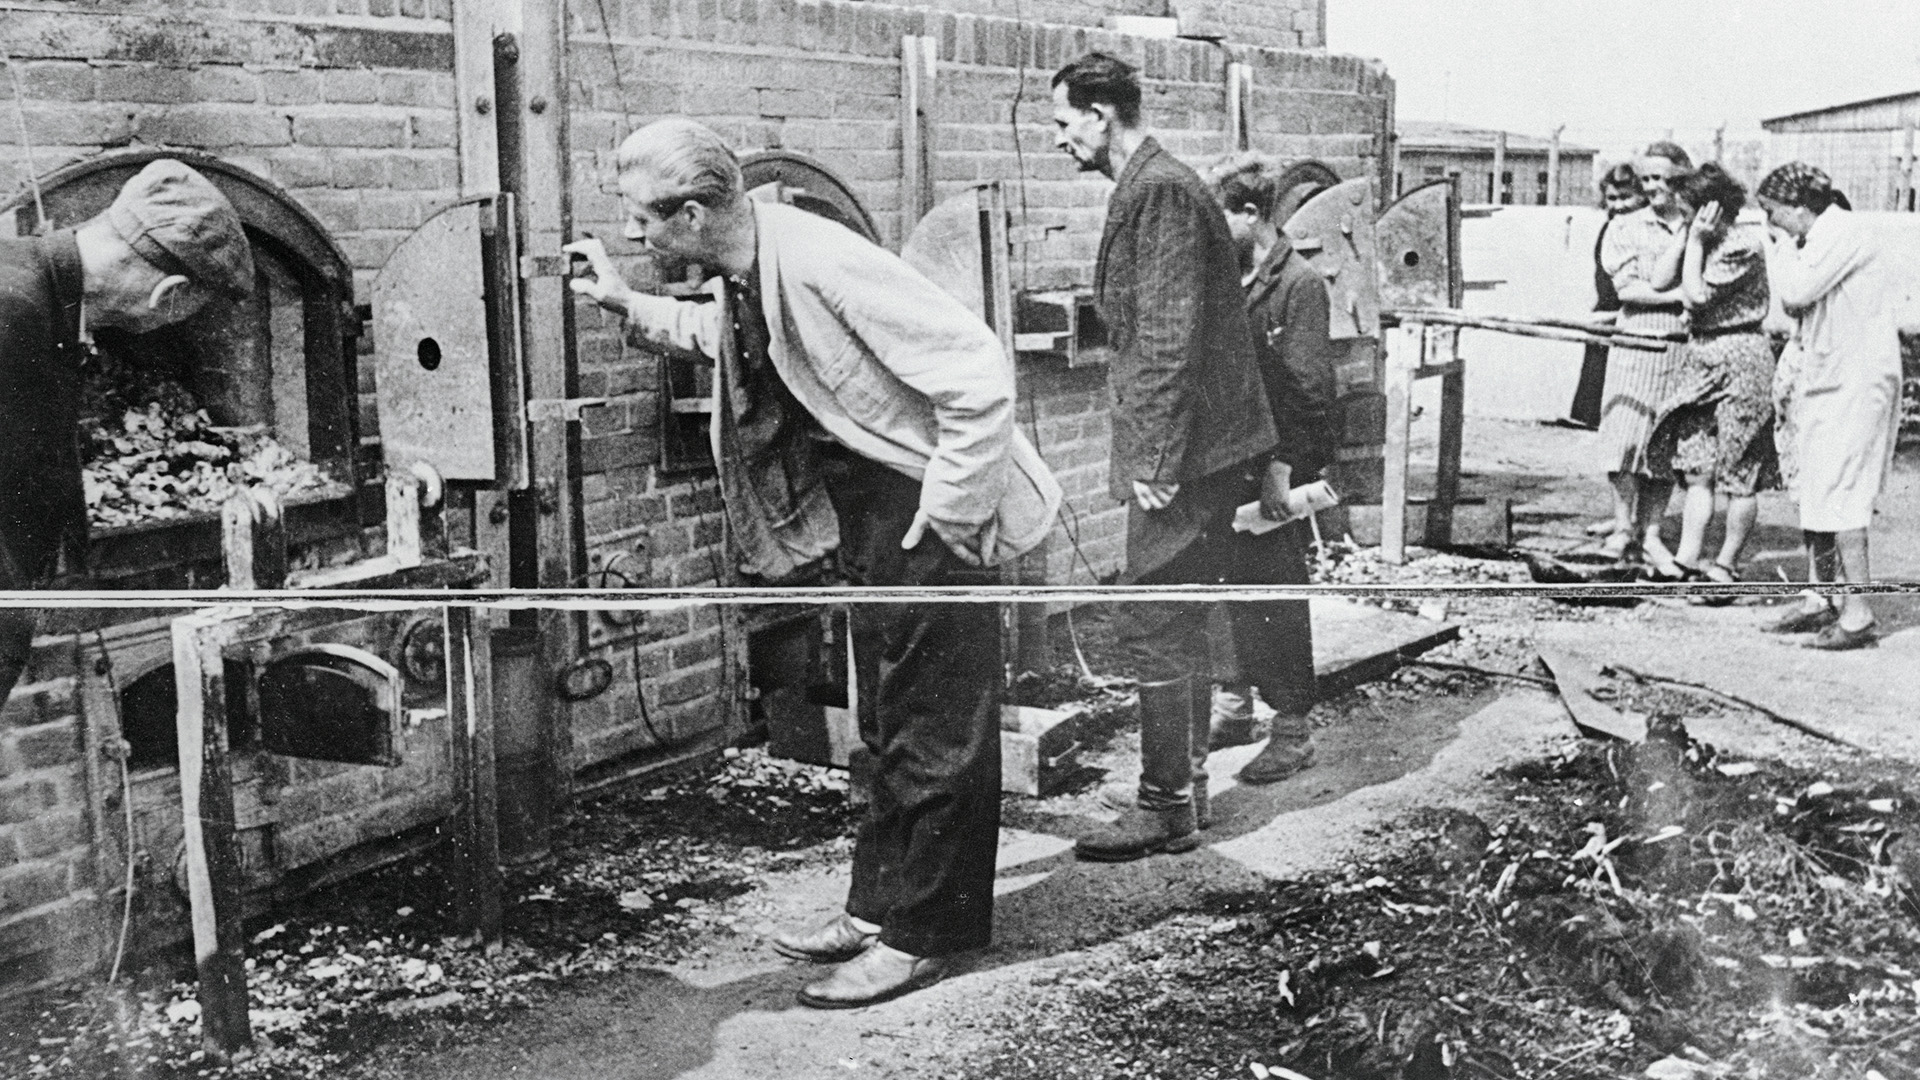 Los hornos crematorios del campo de exterminio de Majdanek, donde se disponían los cuerpos de los muertos por los nazis en las cámaras de gas. Ciudadanos polacos observan los restos poco después de la rendición de las tropas alemanas